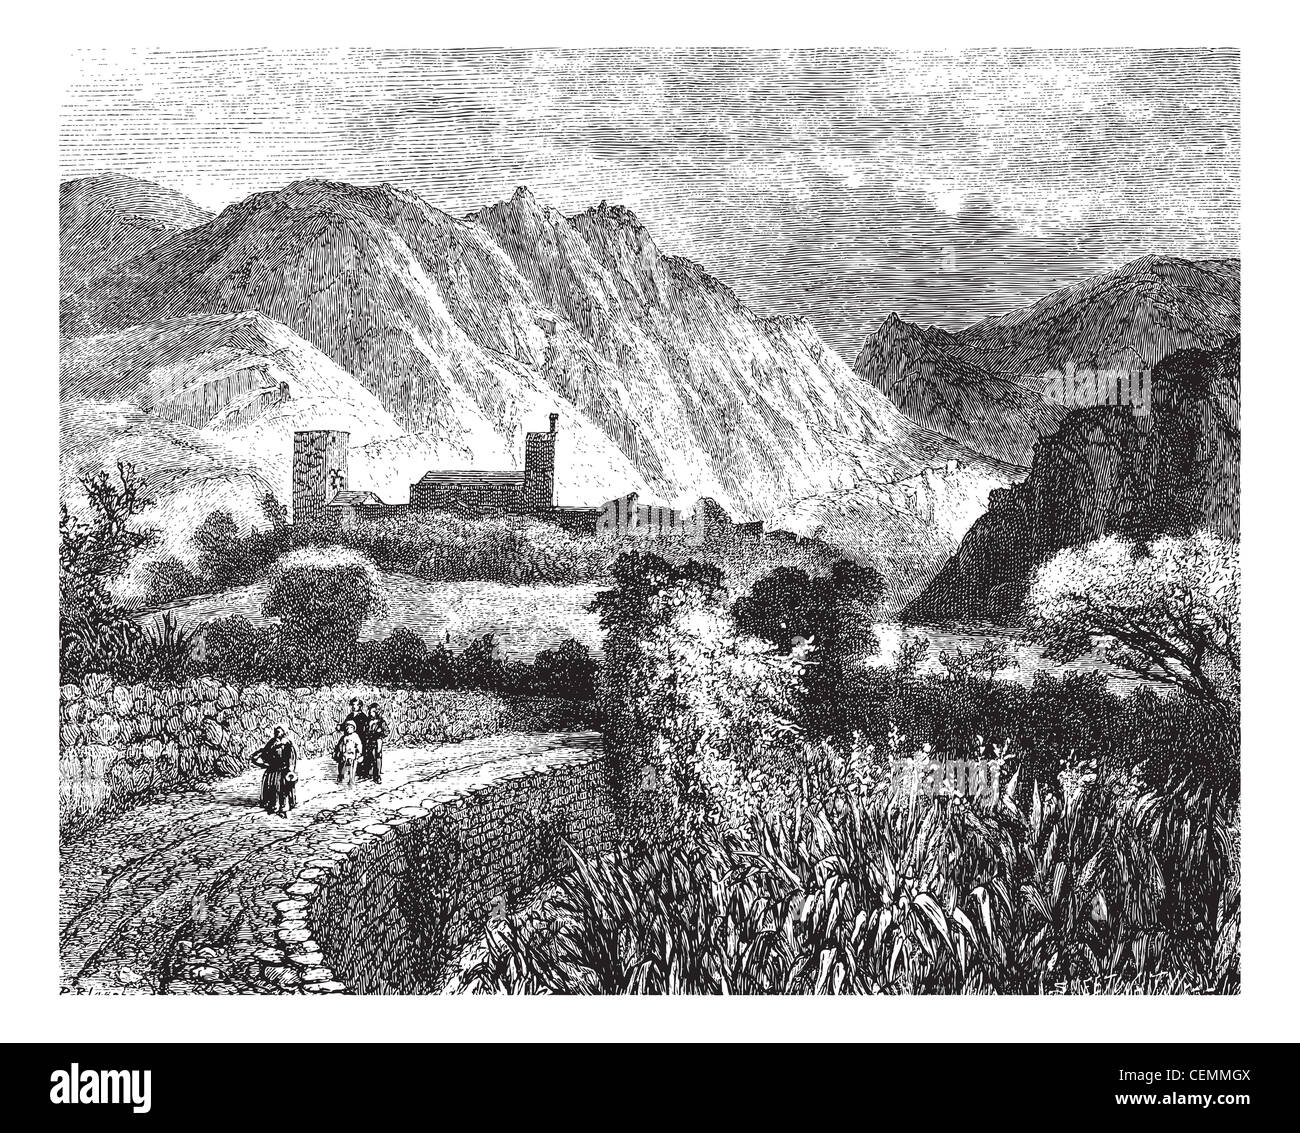 Le Vernet und Mount Canigou; Blick auf der Nordseite. - Zeichnung Ph. Blanchard, Vintage-Grafik. Magasin Pittoresque 1874. Stockfoto